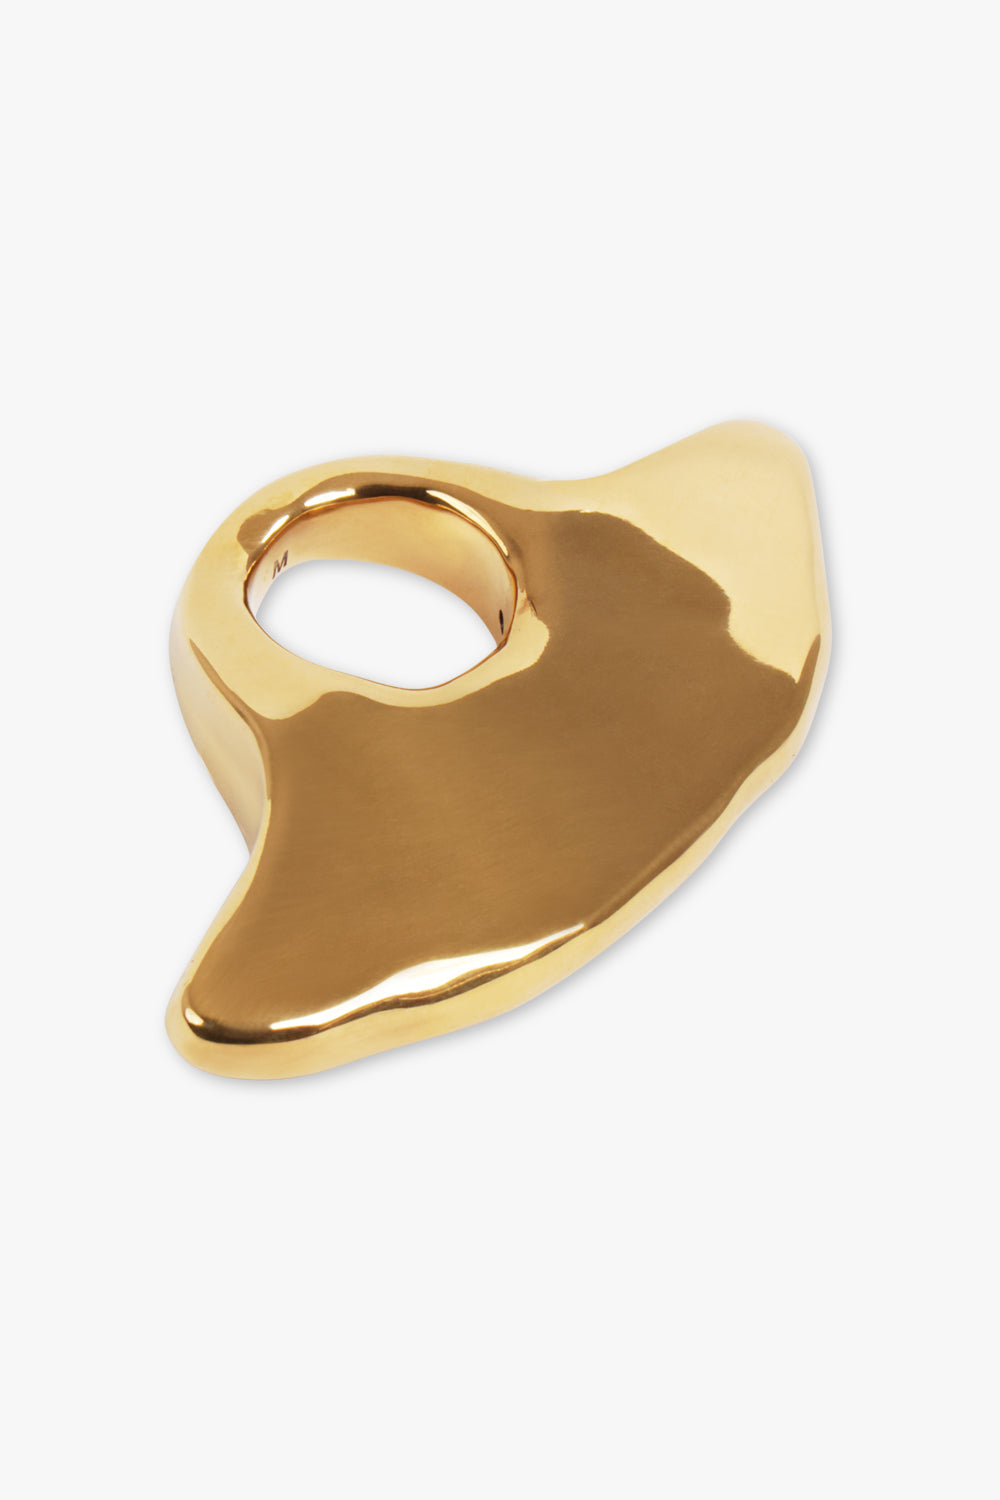 DRIES VAN NOTEN JEWELLERY Sculptured Ring | Brass